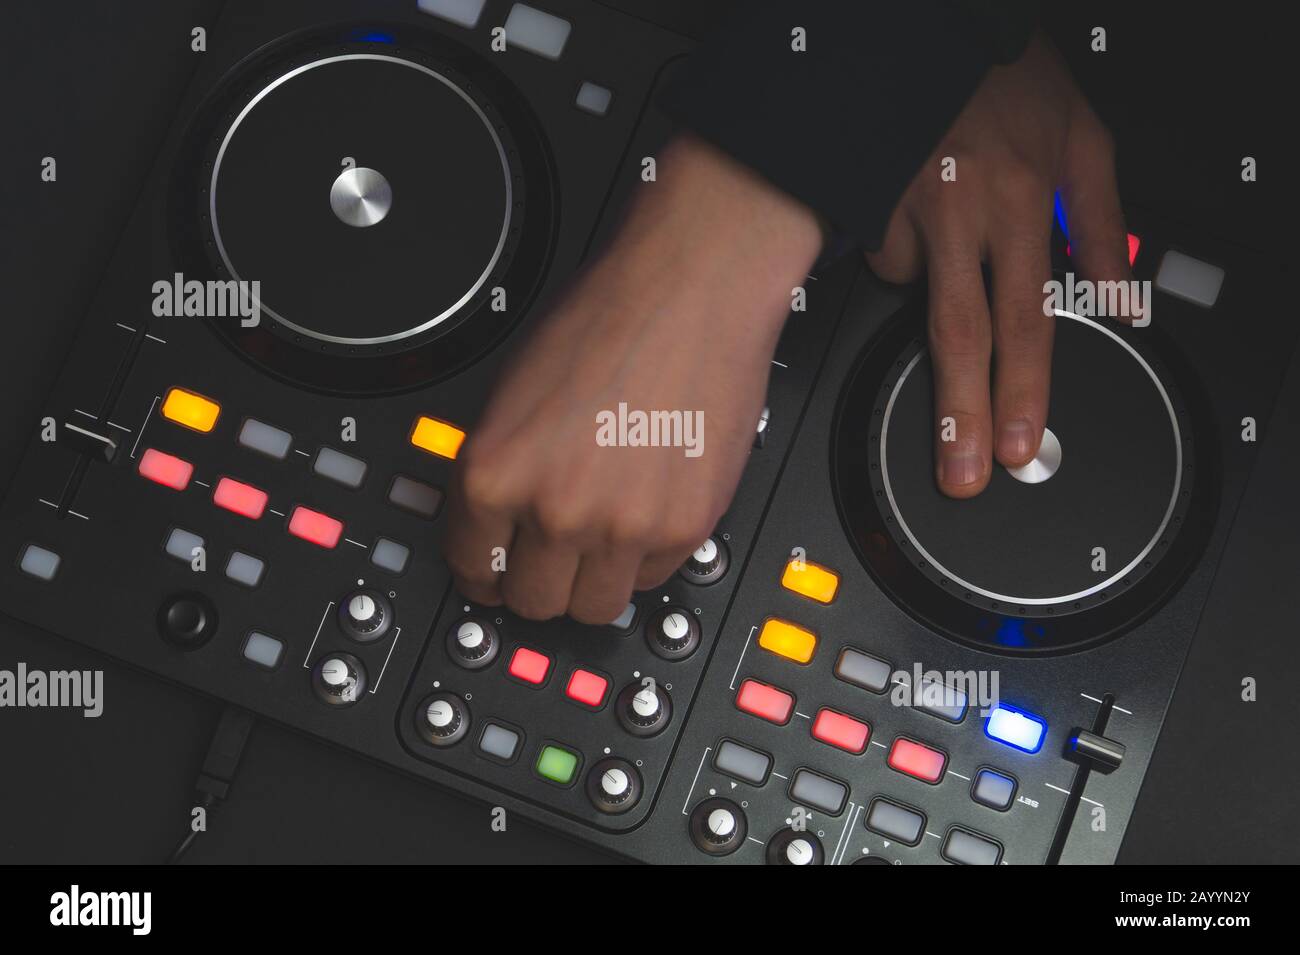 DJ spielt Musik ab. Sound Mixer Controller mit Knöpfen und Schiebereglern nah oben. Hände auf dem Mischdeck und Drehtische bei Dunkelheit mit beleuchteten Bedienelementen Stockfoto